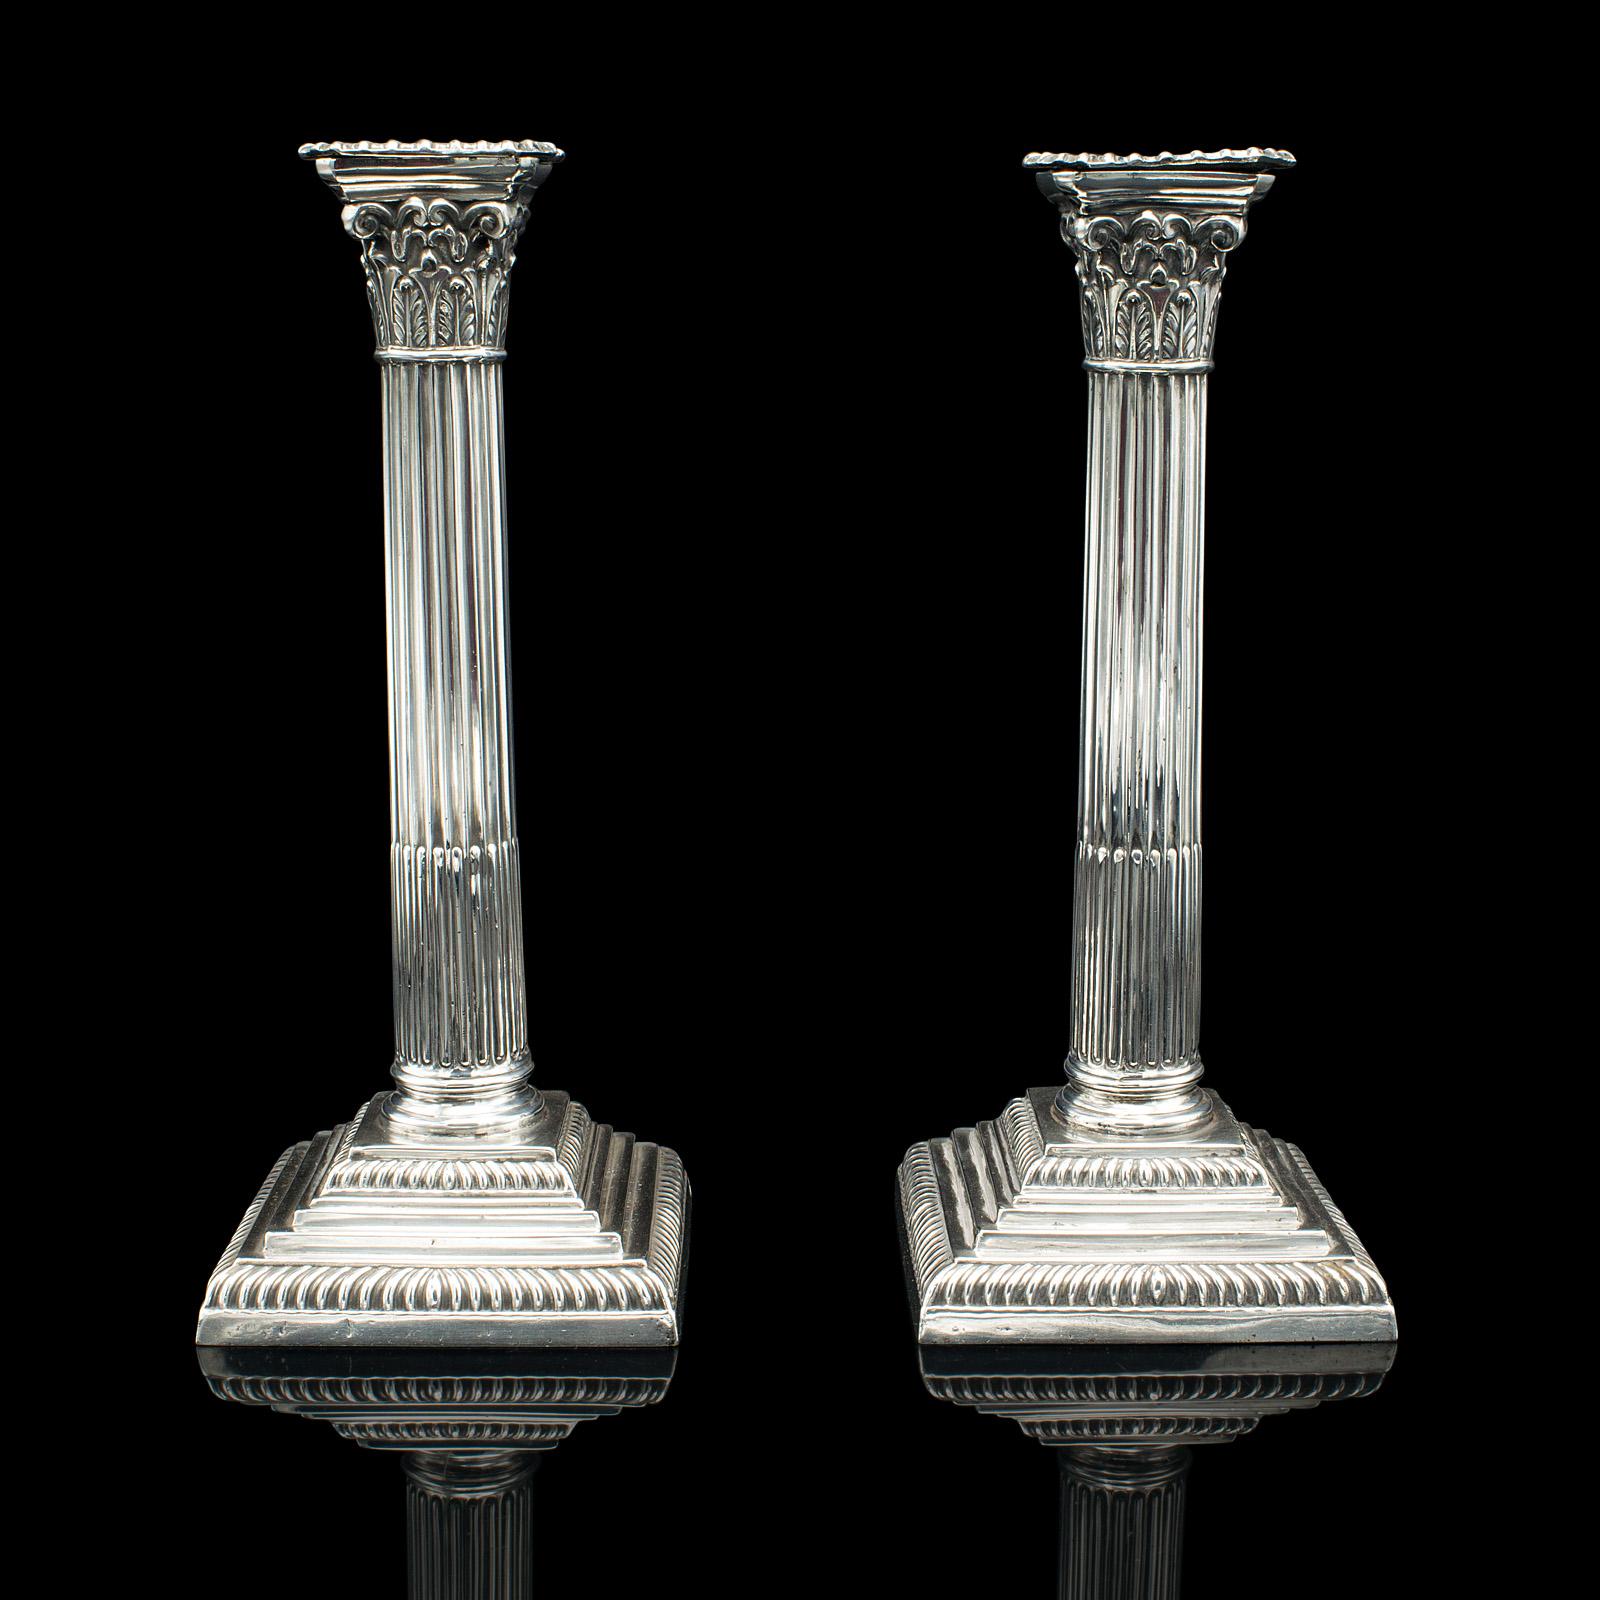 Dies ist ein Paar antike dekorative Kerzenständer. Ein englischer, versilberter Kerzenständer im klassischen Geschmack, aus der spätviktorianischen Zeit, um 1900.

Hübsche Kerzenständer mit traditioneller Ästhetik
Mit wünschenswerter Alterspatina